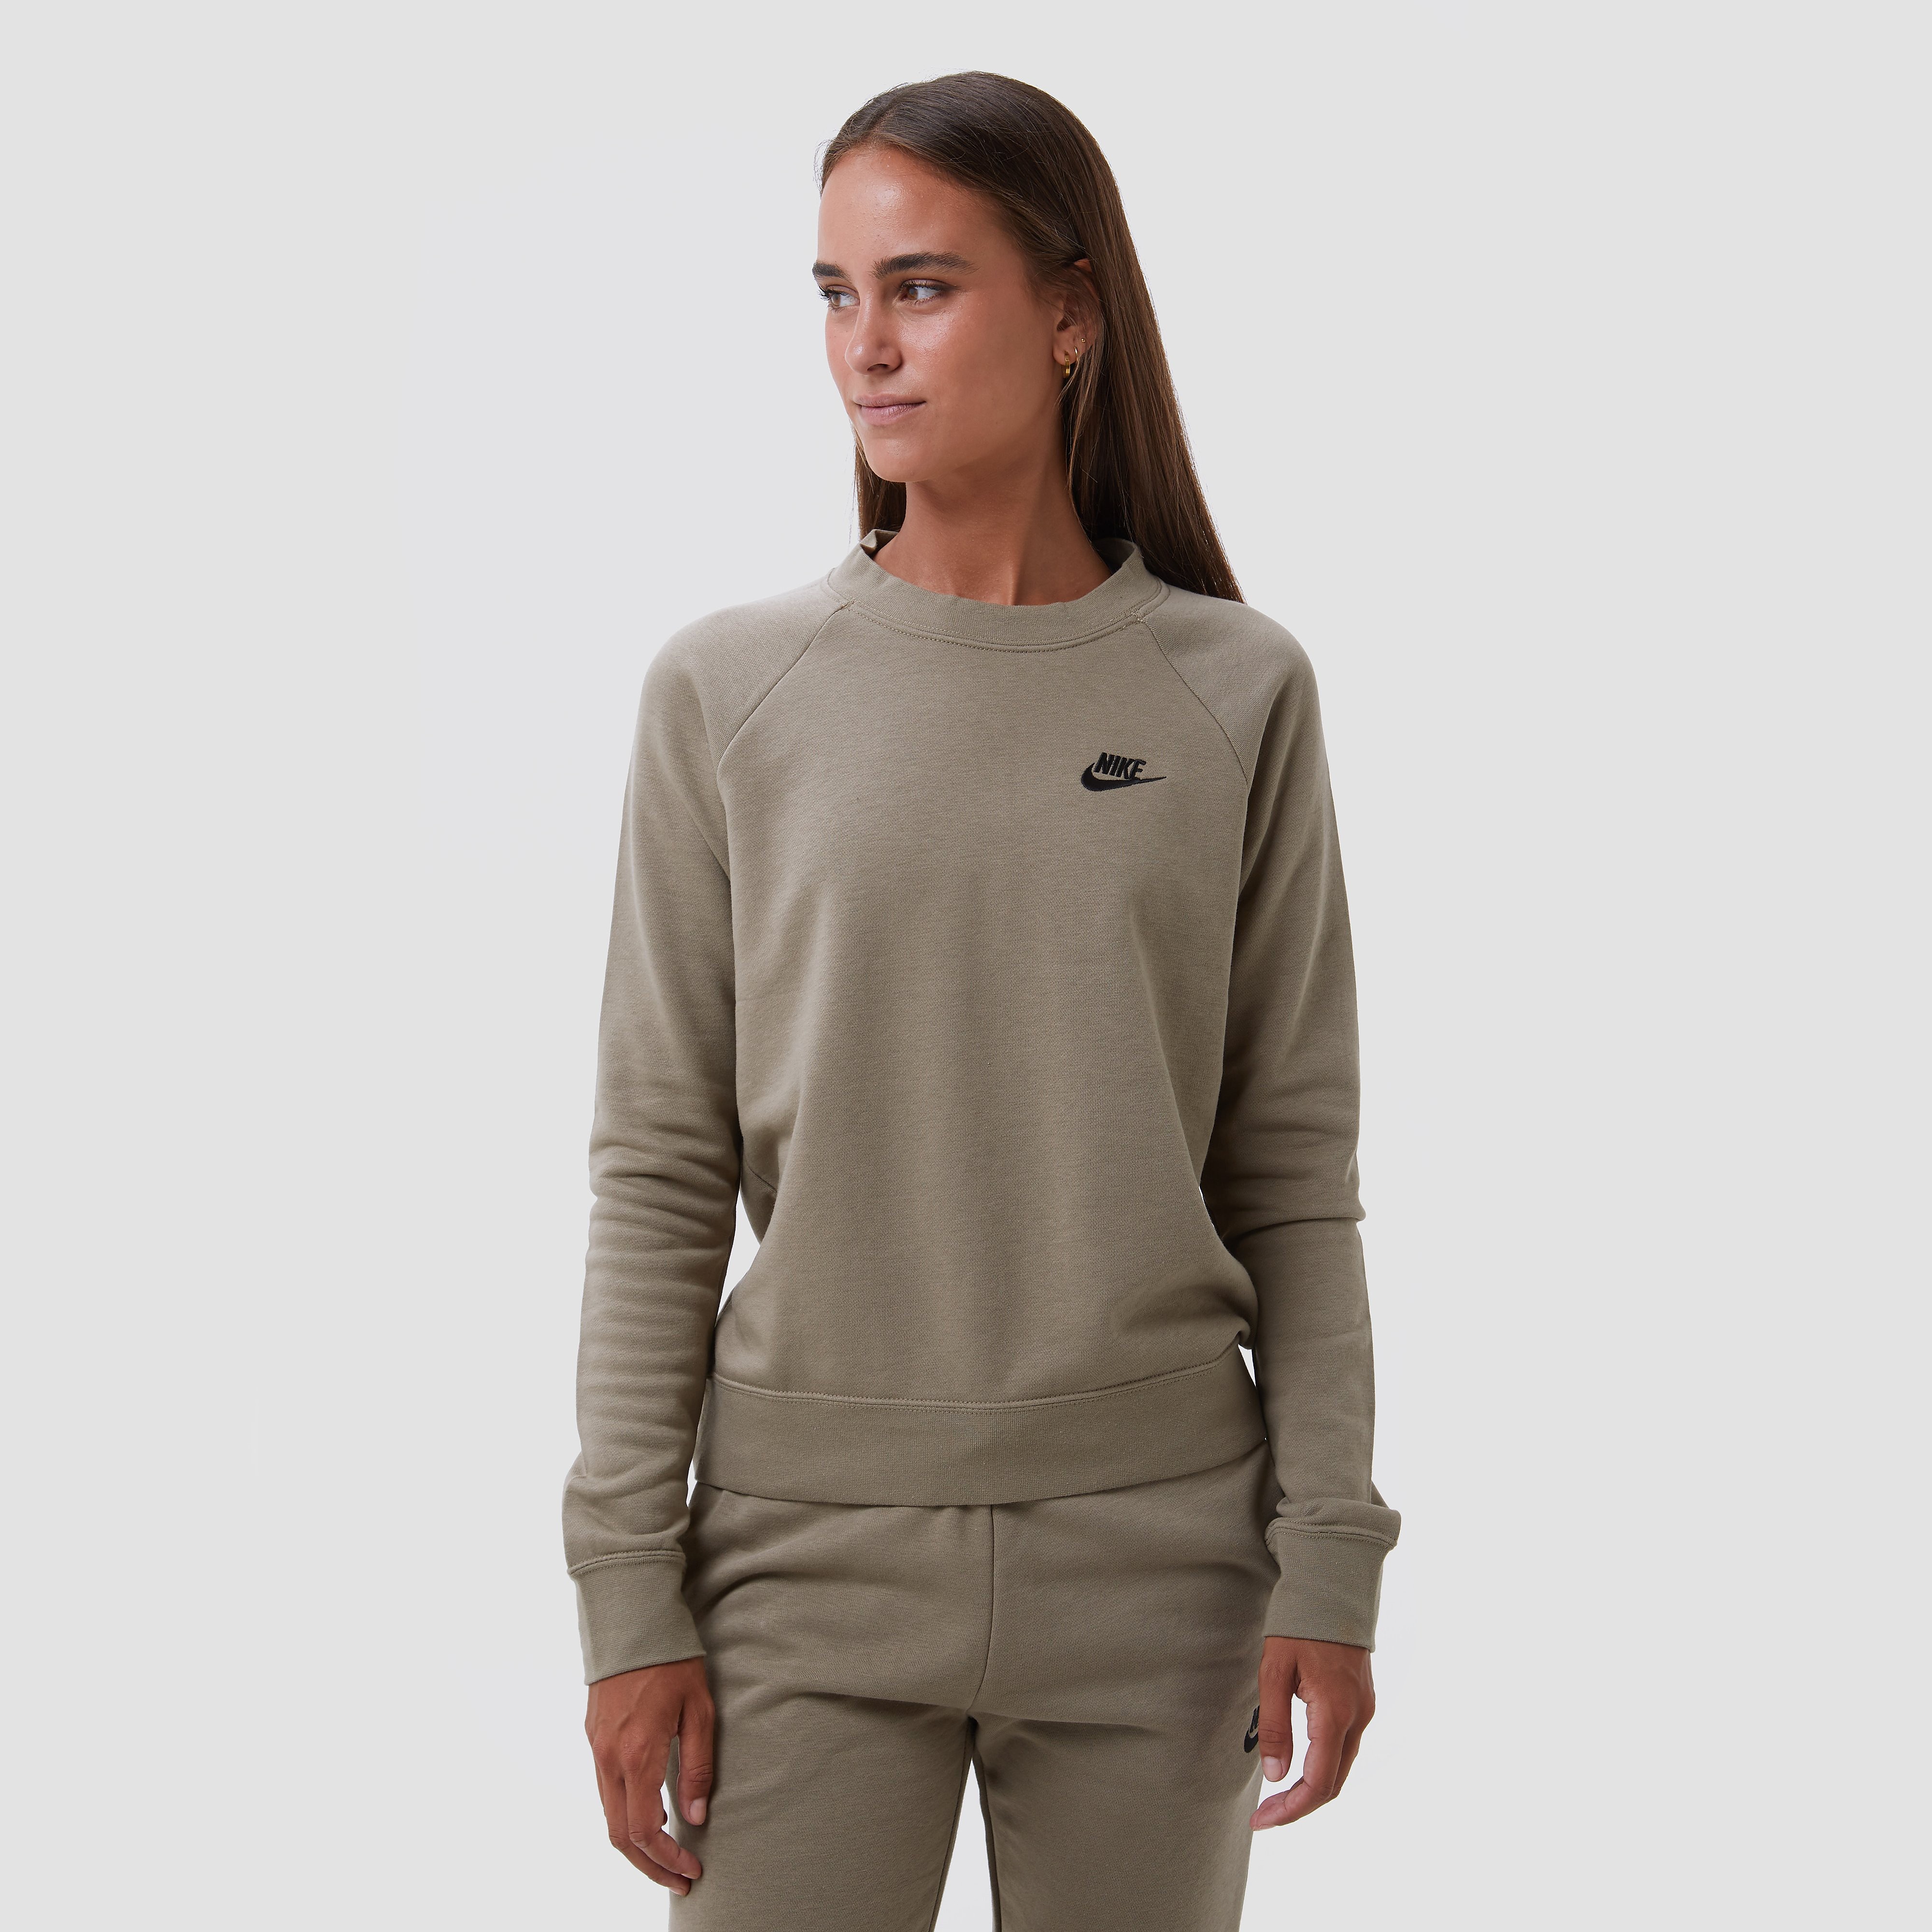 Nike Nike sportswear essential fleece crew sweater groen dames dames